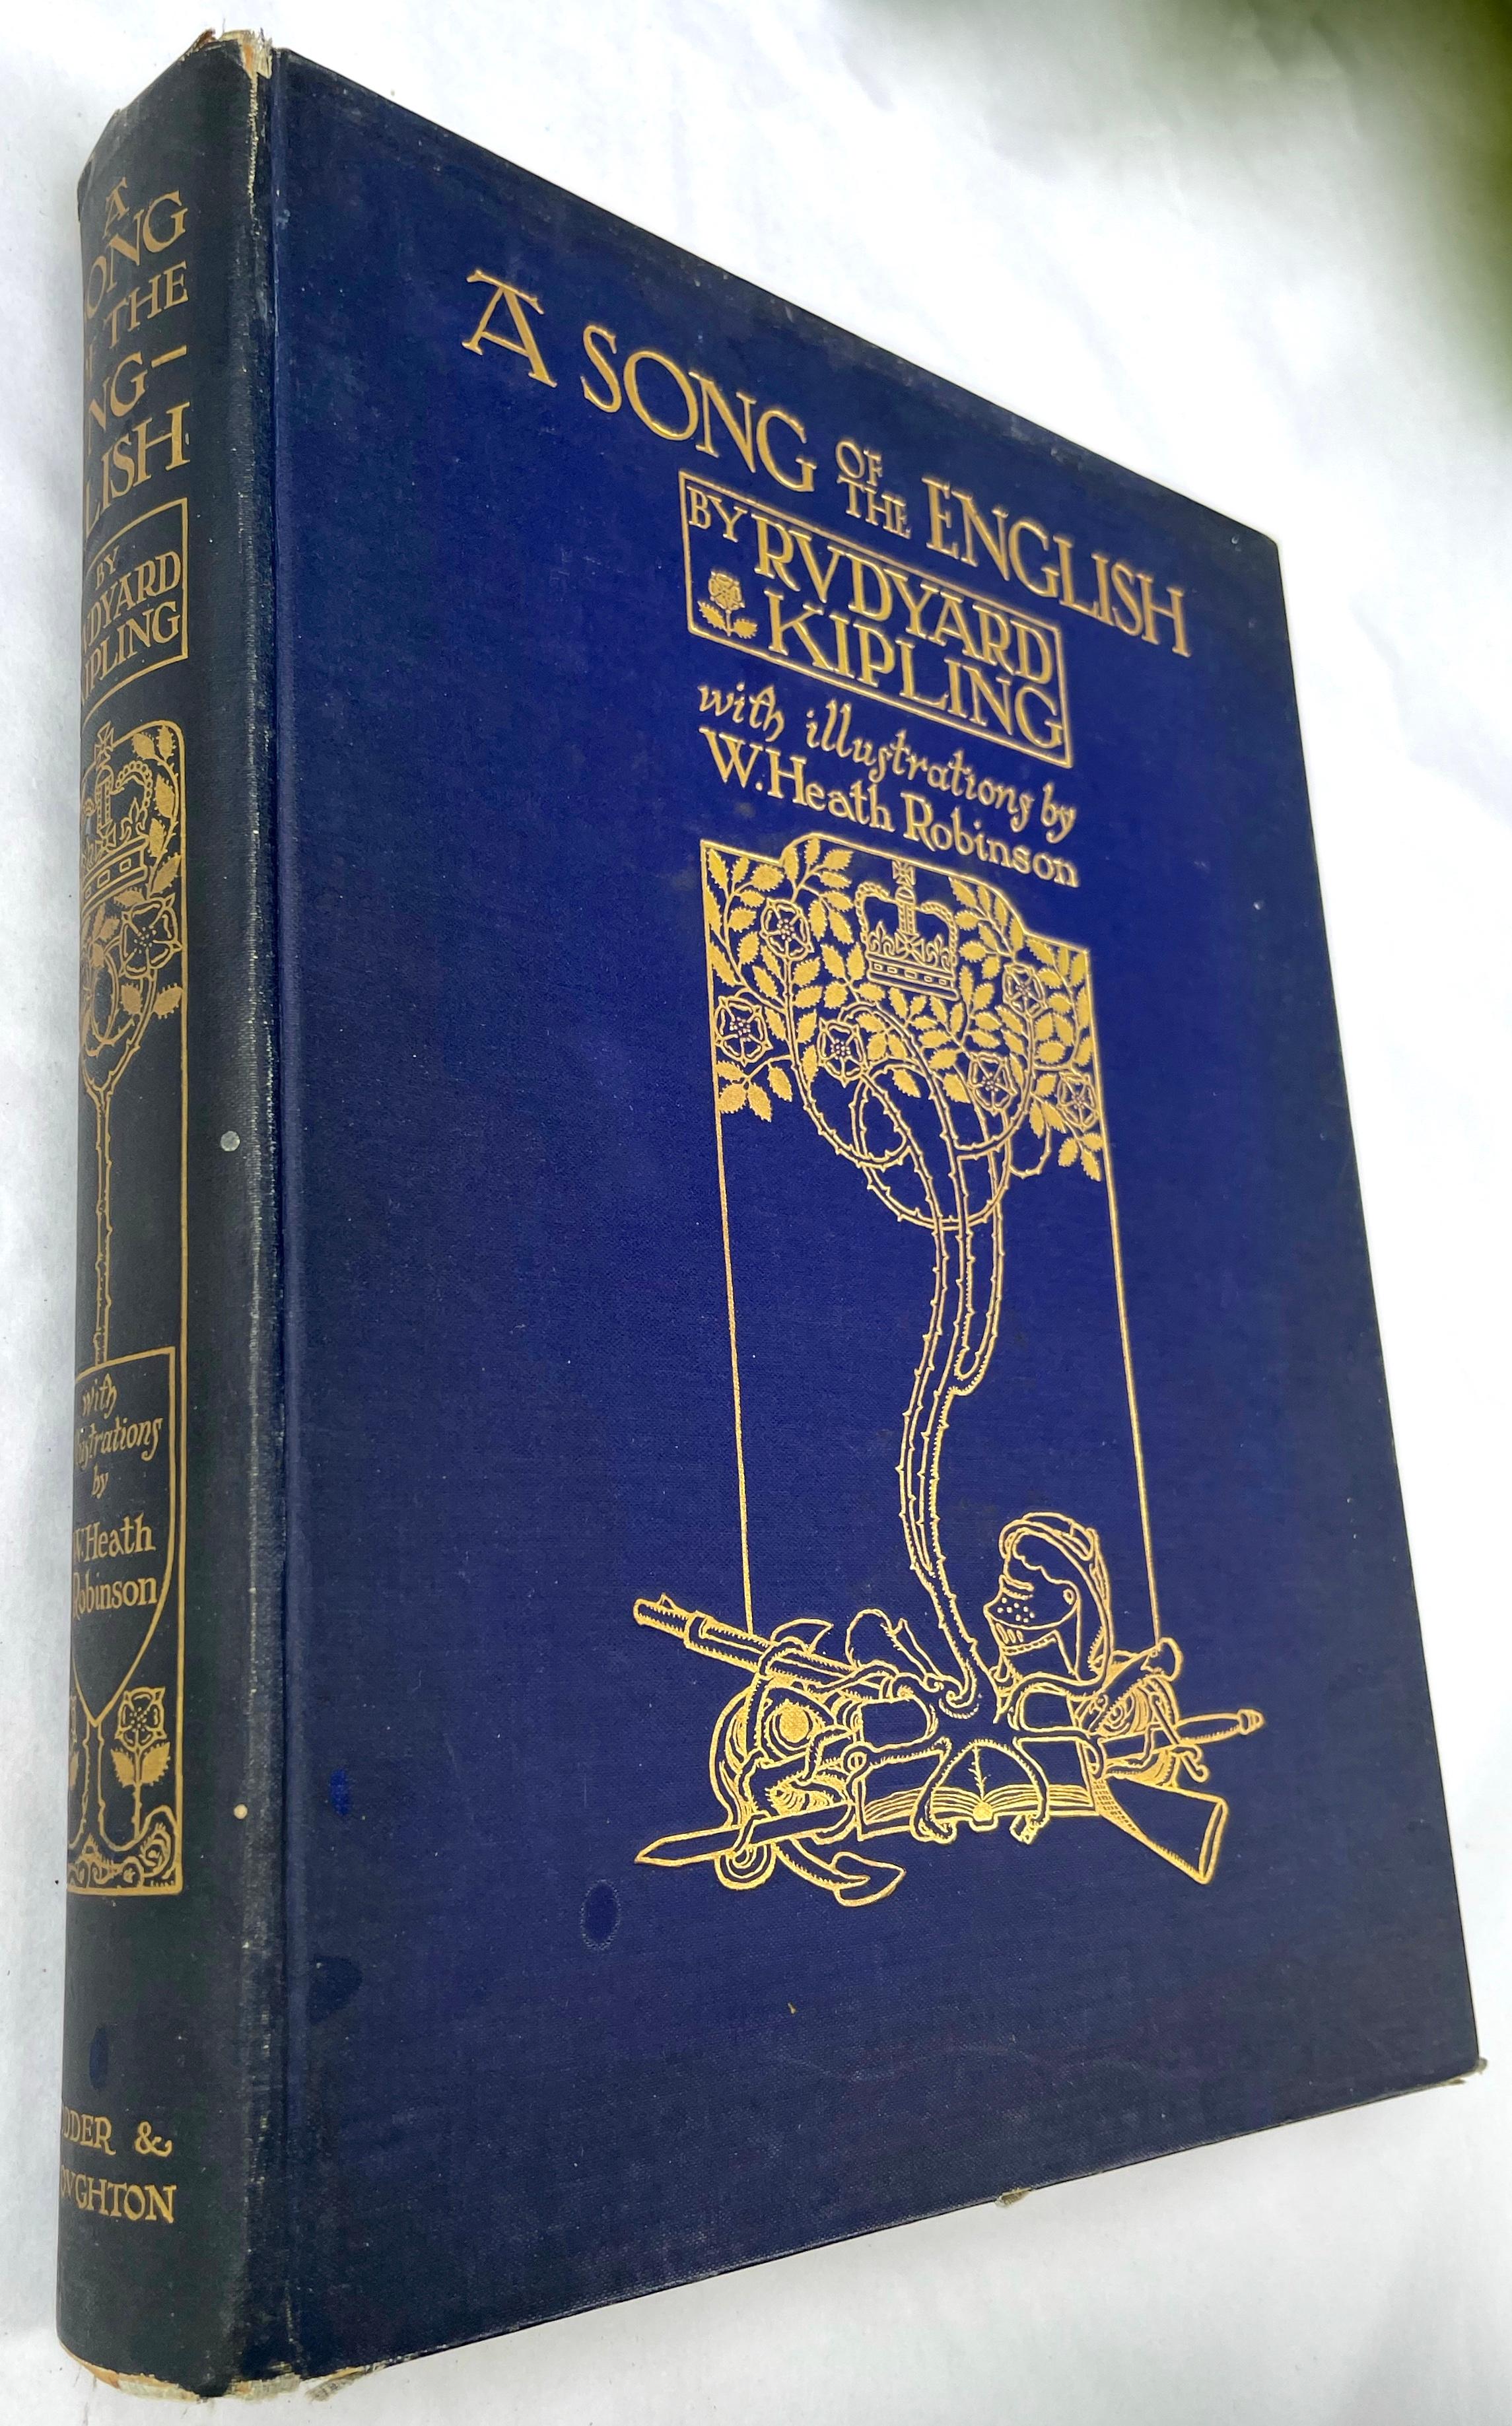 Erste Ausgabe ein Lied von The English von Rudyard Kipling. Blaues Originalleinen mit goldgeprägtem Vorderdeckel und Rücken. Illustrierte Ausgabe von Robinson. Großes Quarto (10 15/16 x 8 5/8 Zoll). Dreißig Farbtafeln (einschließlich Frontispiz),